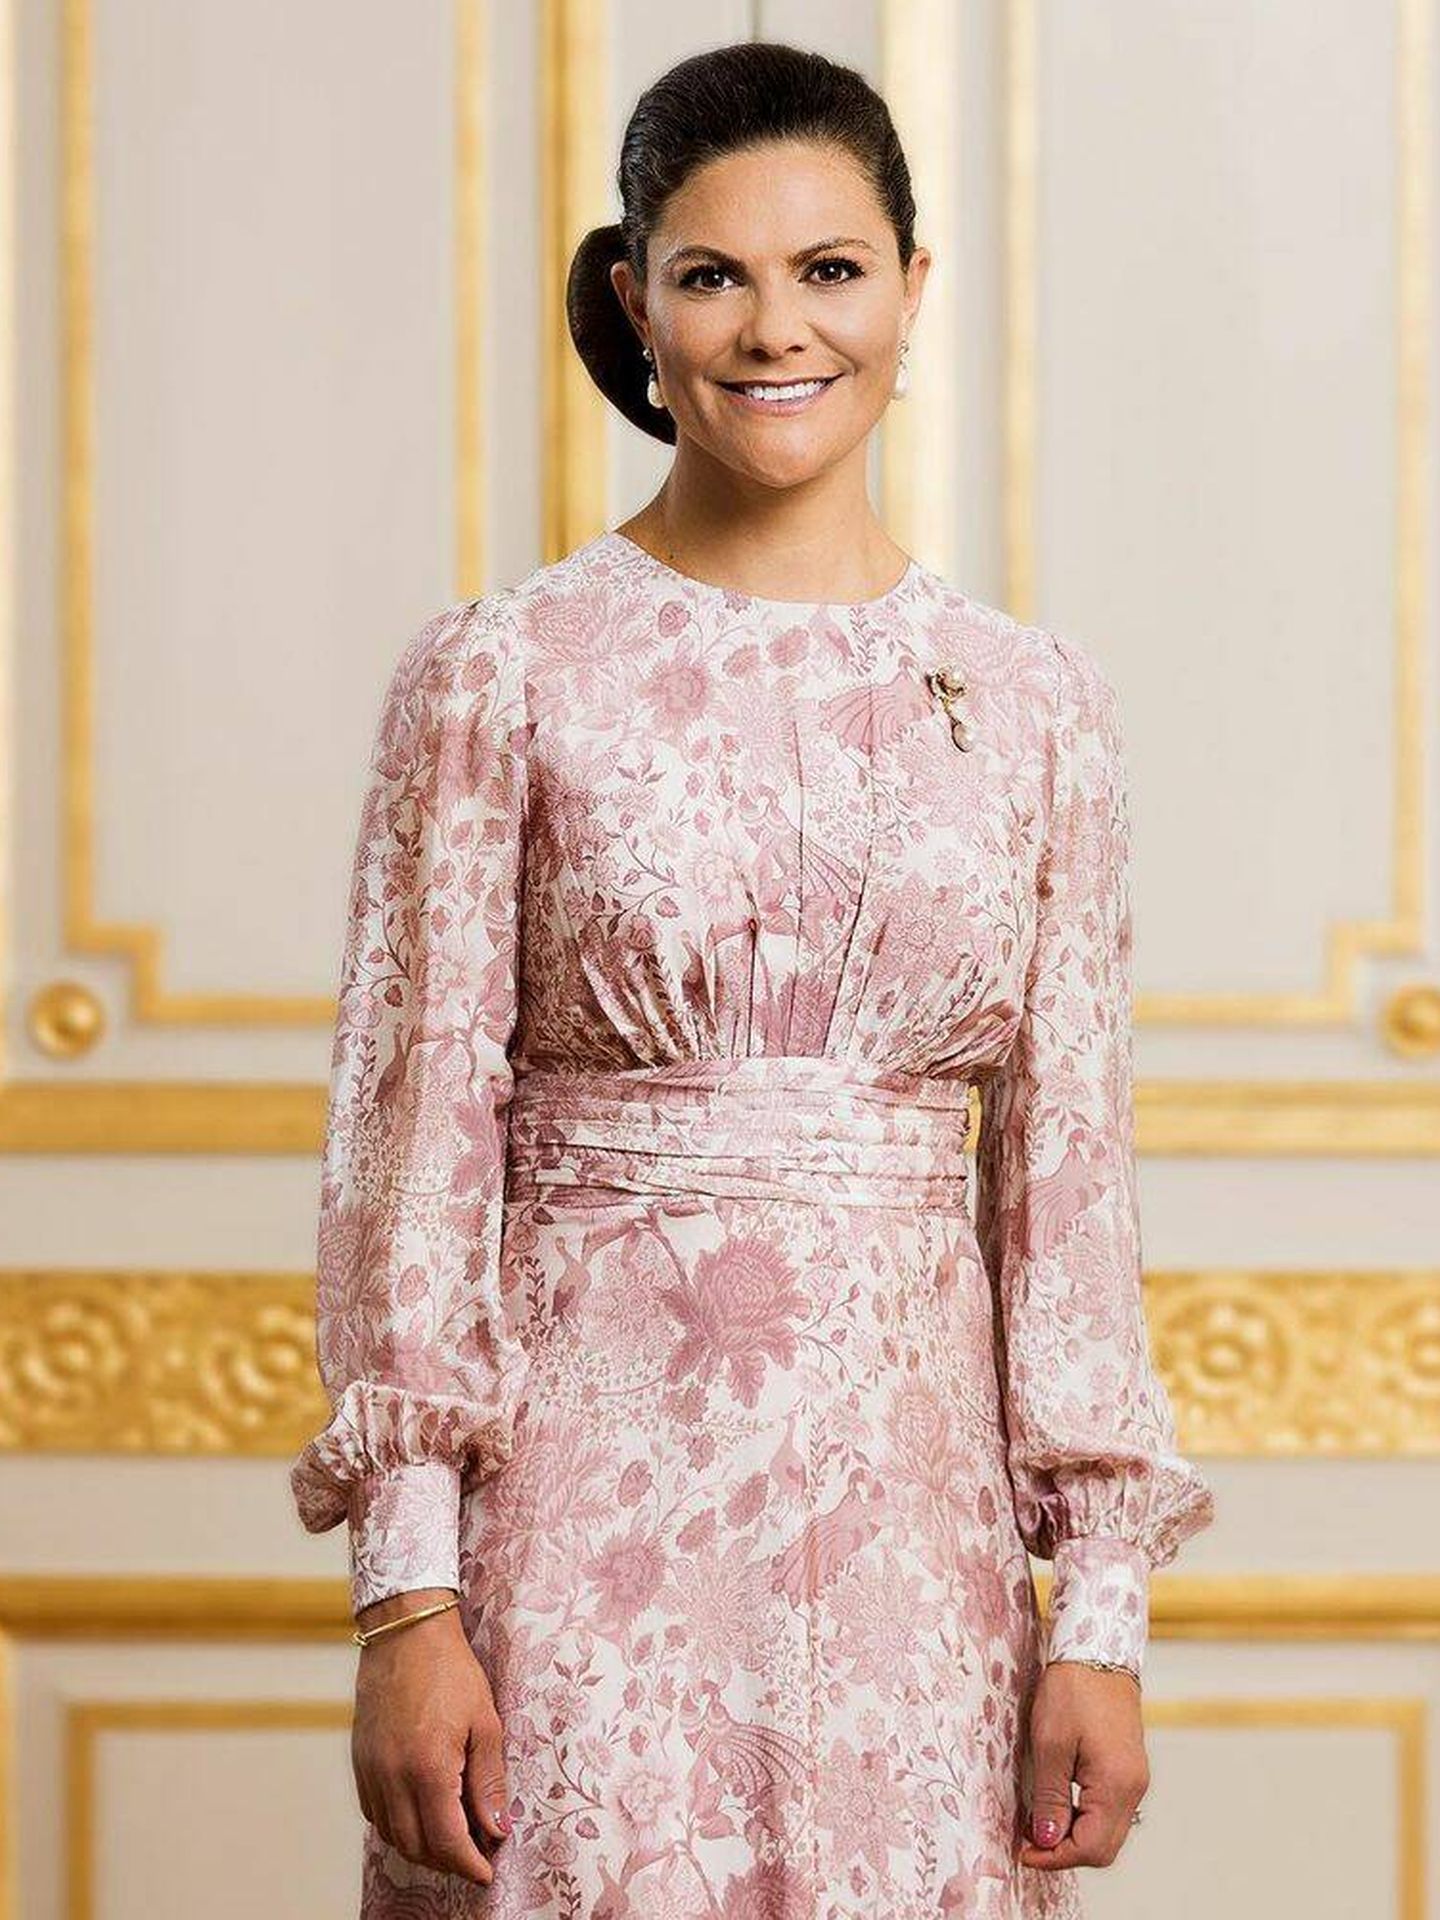 La nueva fotografía oficial que ha publicado la Casa Real sueca para felicitar a Victoria. (Instagram/@kungahuset)